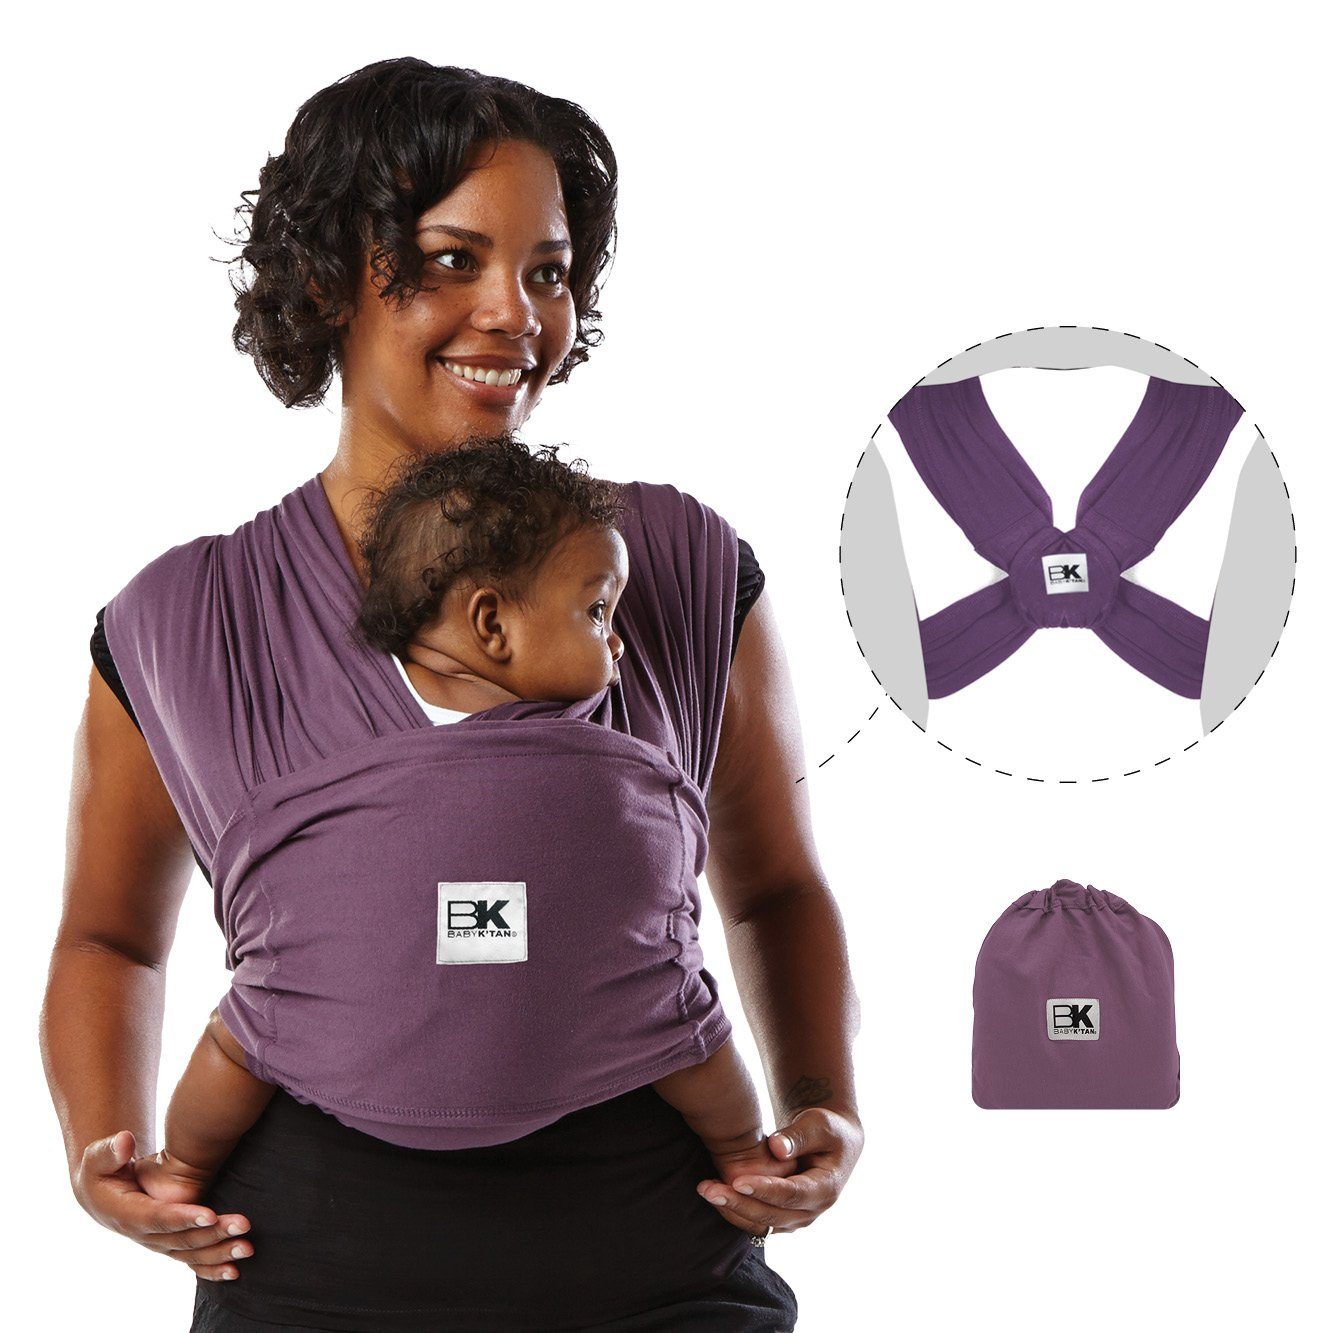 Baby K'tan Babytrage Baby K'tan Babytrage Original aubergine, -  ergonomische Positionierung des Säuglings, - keine Schnallen, Ringe oder  Verschlüsse, - einfaches Anziehen wie ein T-Shirt, - 5 Tragepositionen